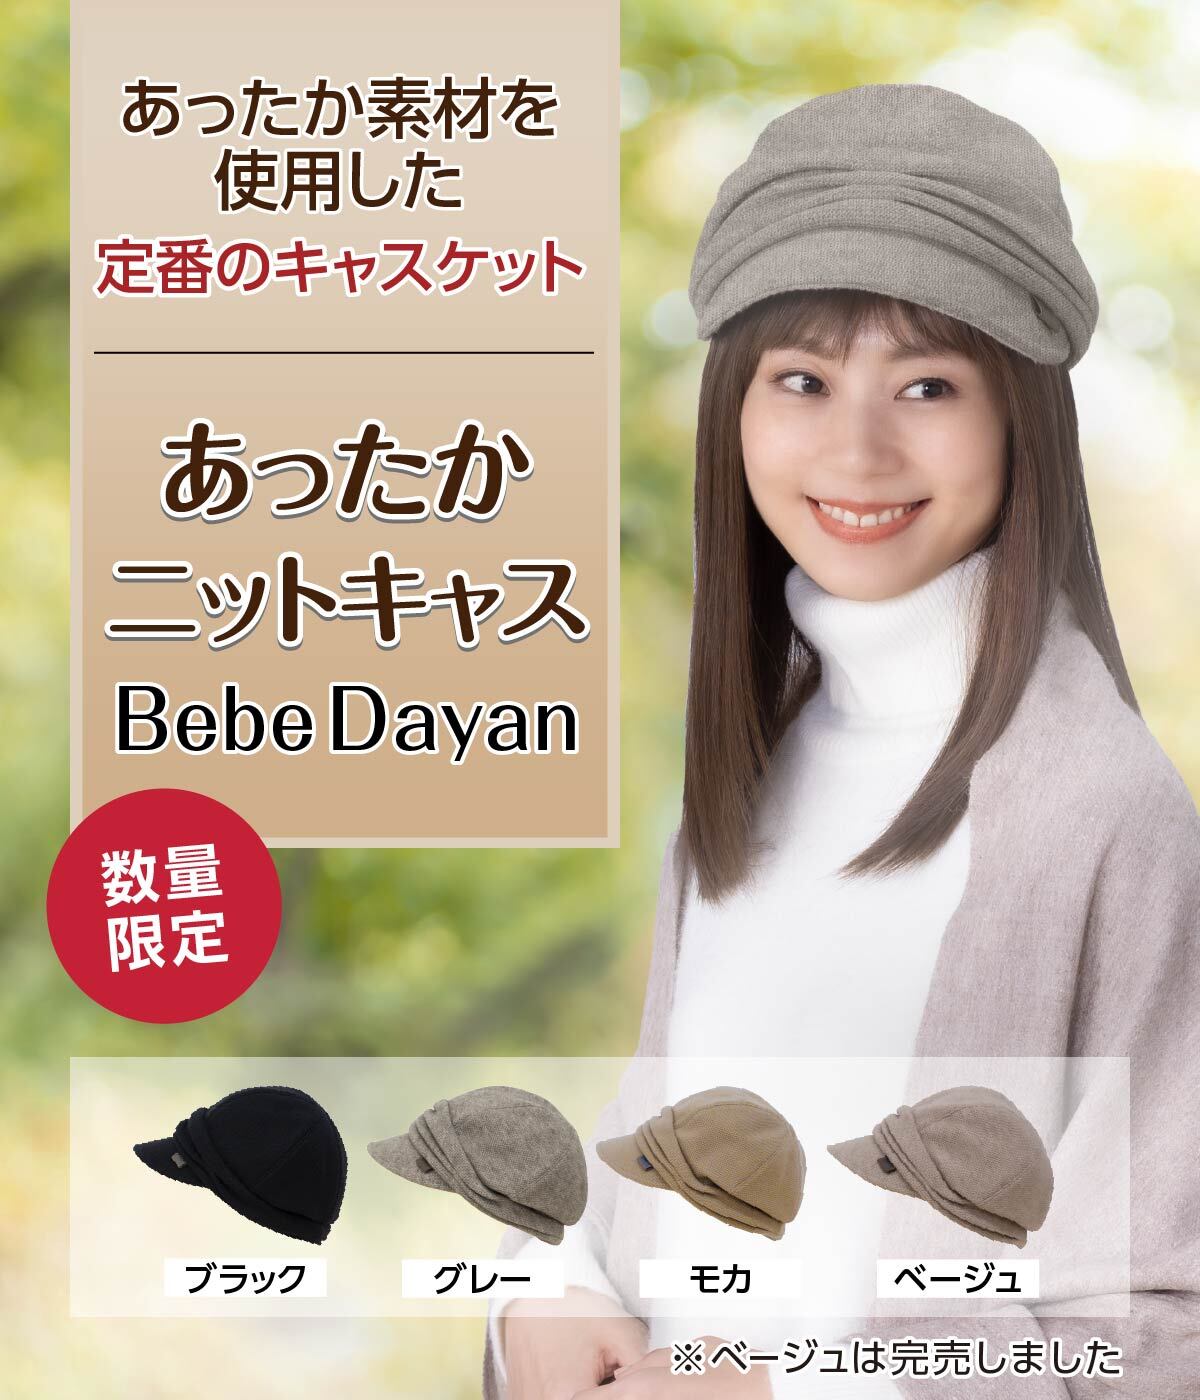 わちふぃーるど Bebe Dayan 帽子 Cap